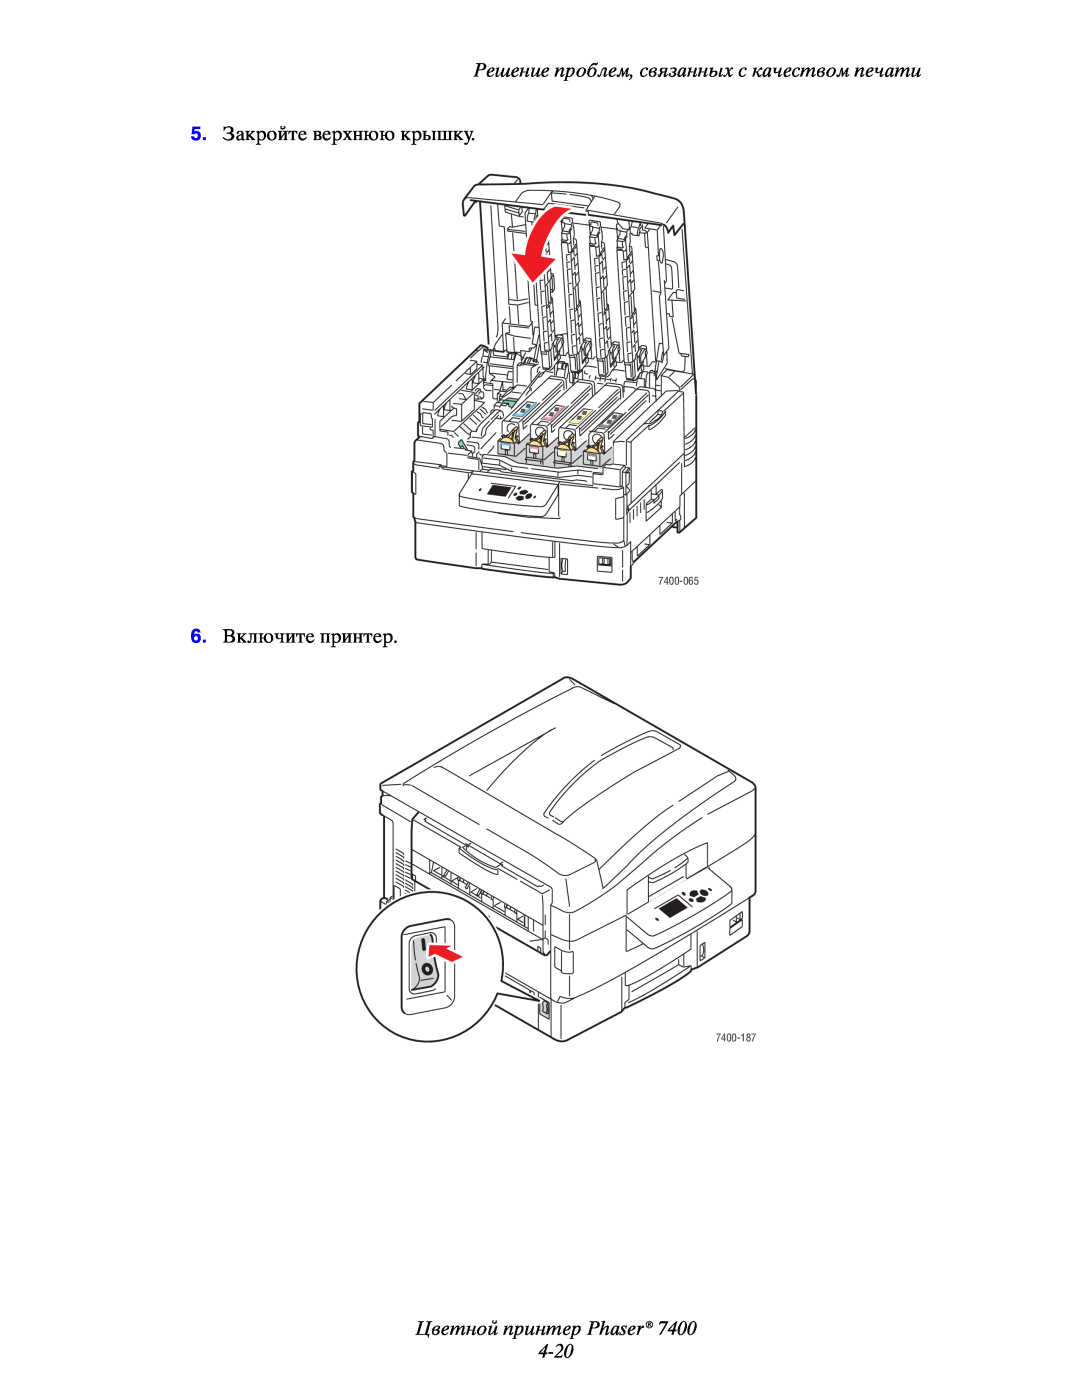 Xerox Цветной принтер Phaser 4-20, Решение проблем, связанных с качеством печати, 5.Закройте верхнюю крышку, 7400-065 